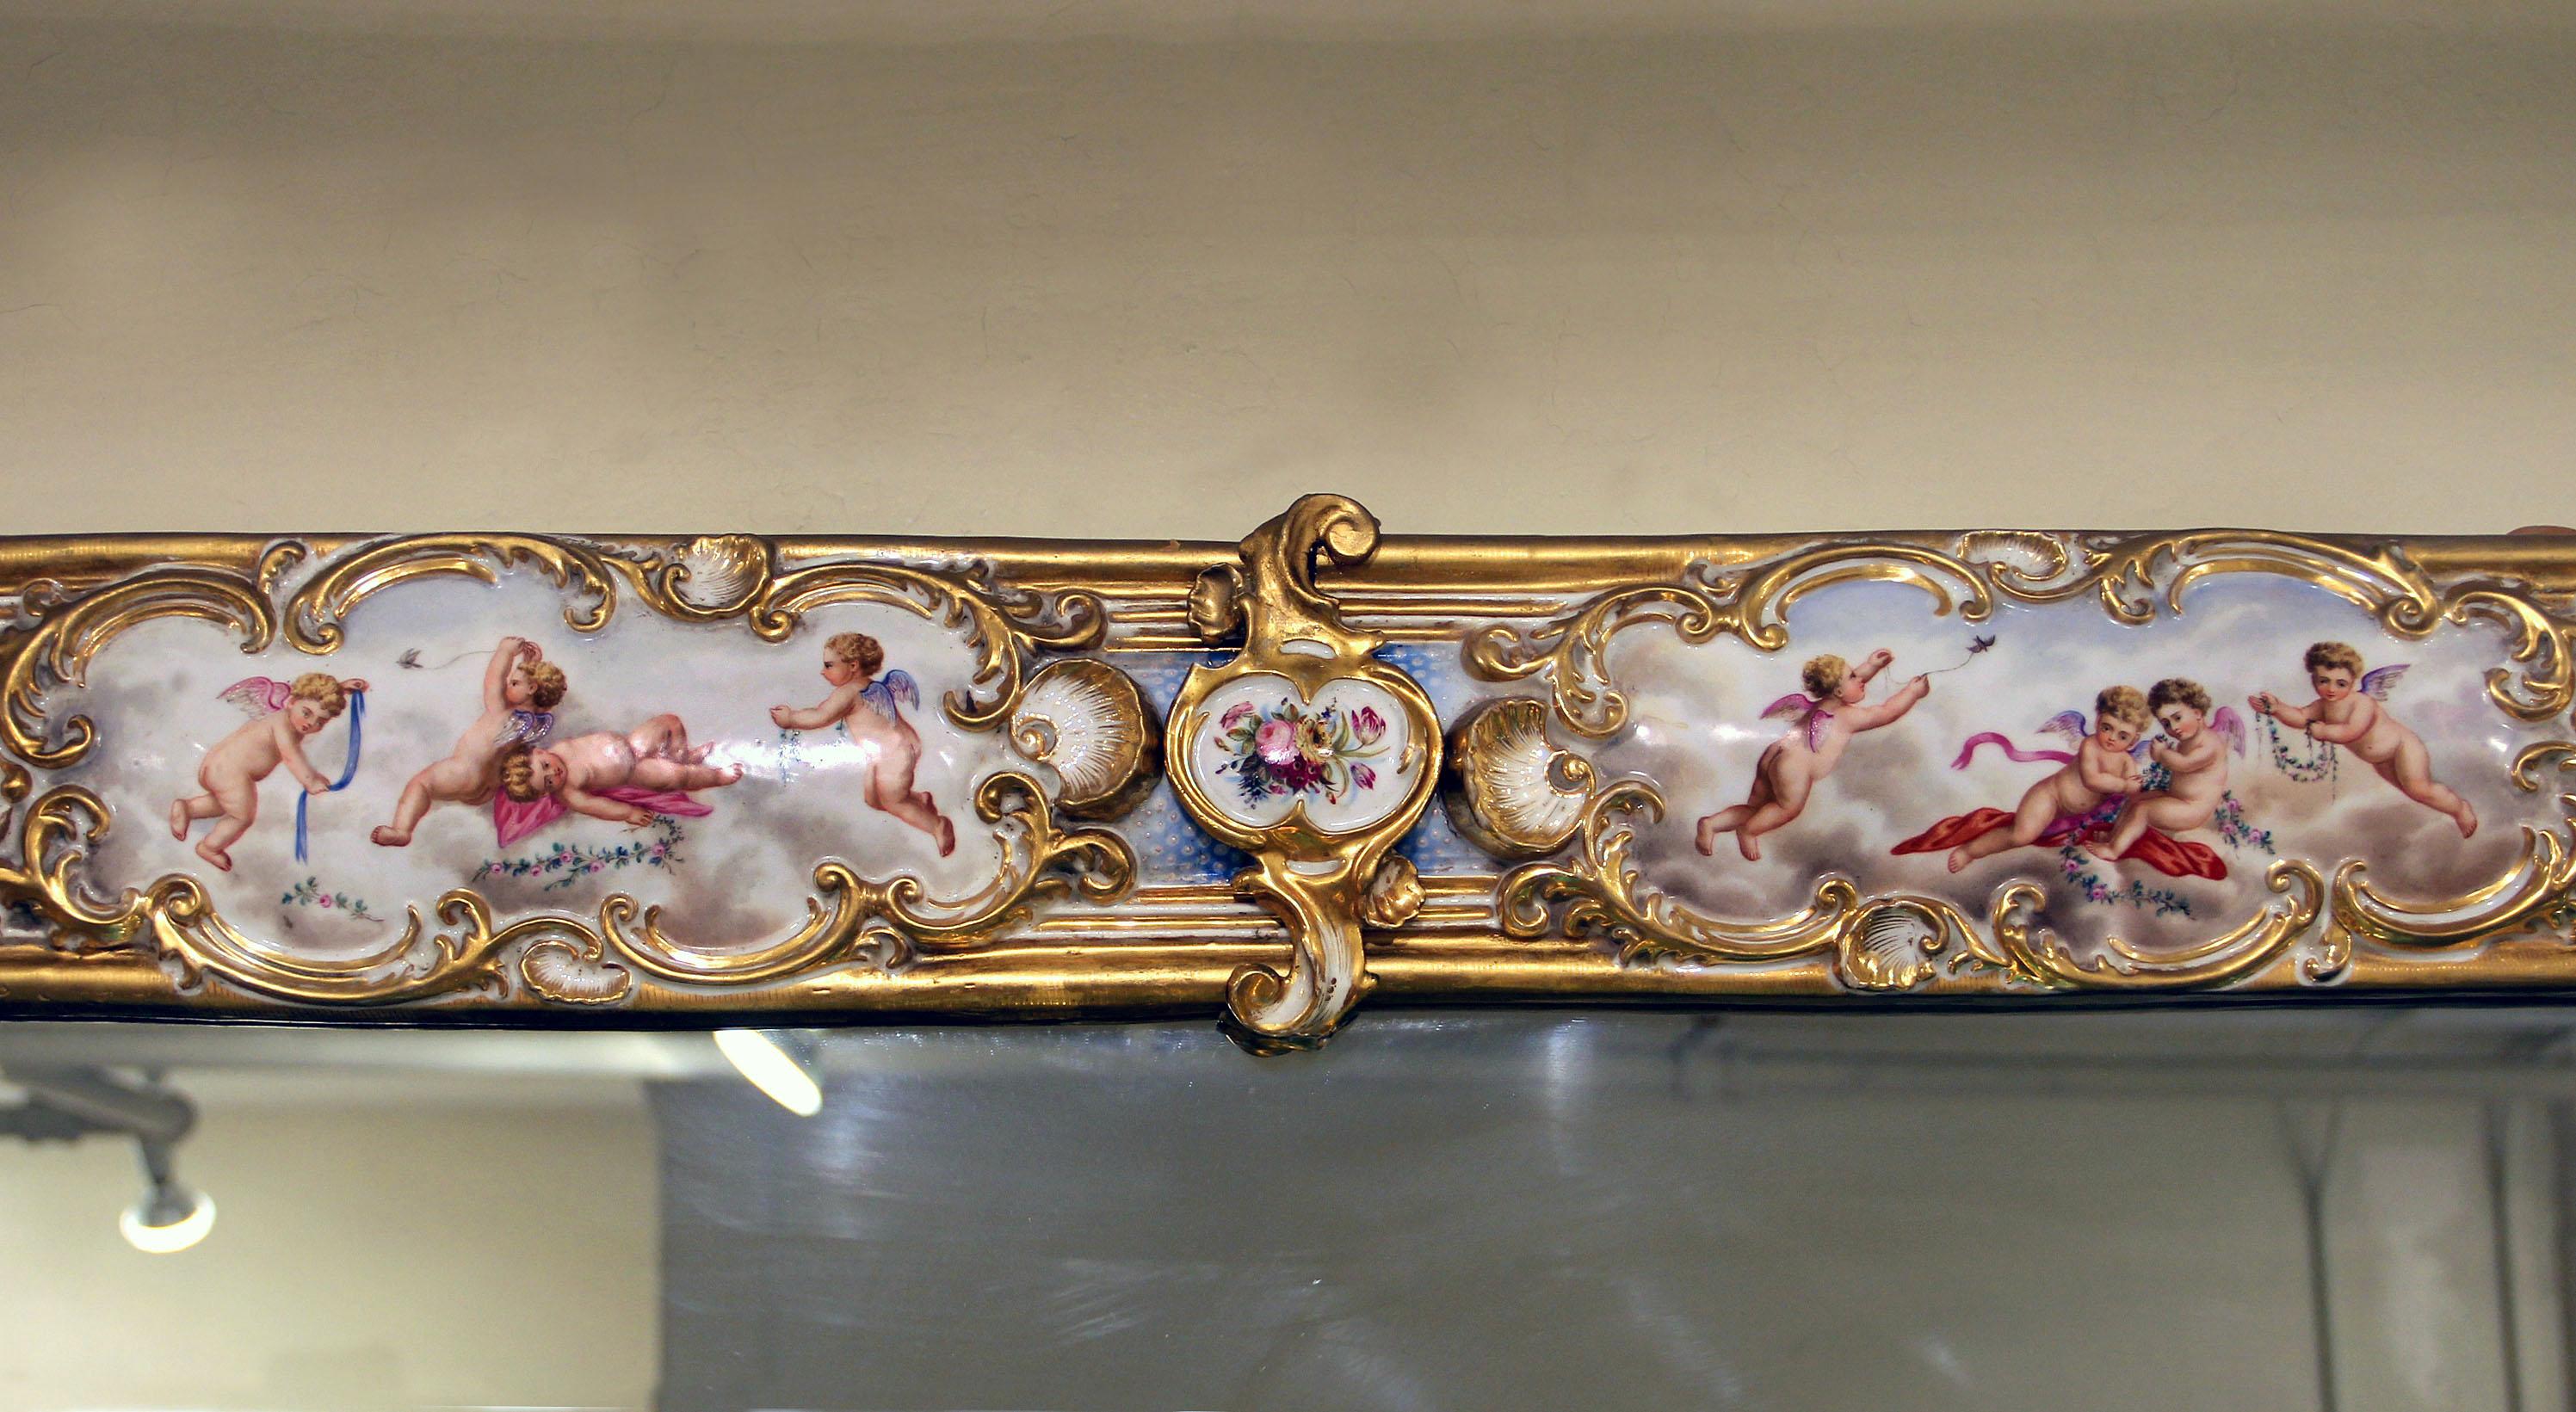 Verre Paire de miroirs en porcelaine de Sèvres de la fin du 19e siècle:: rare et spéciale:: de style palatial